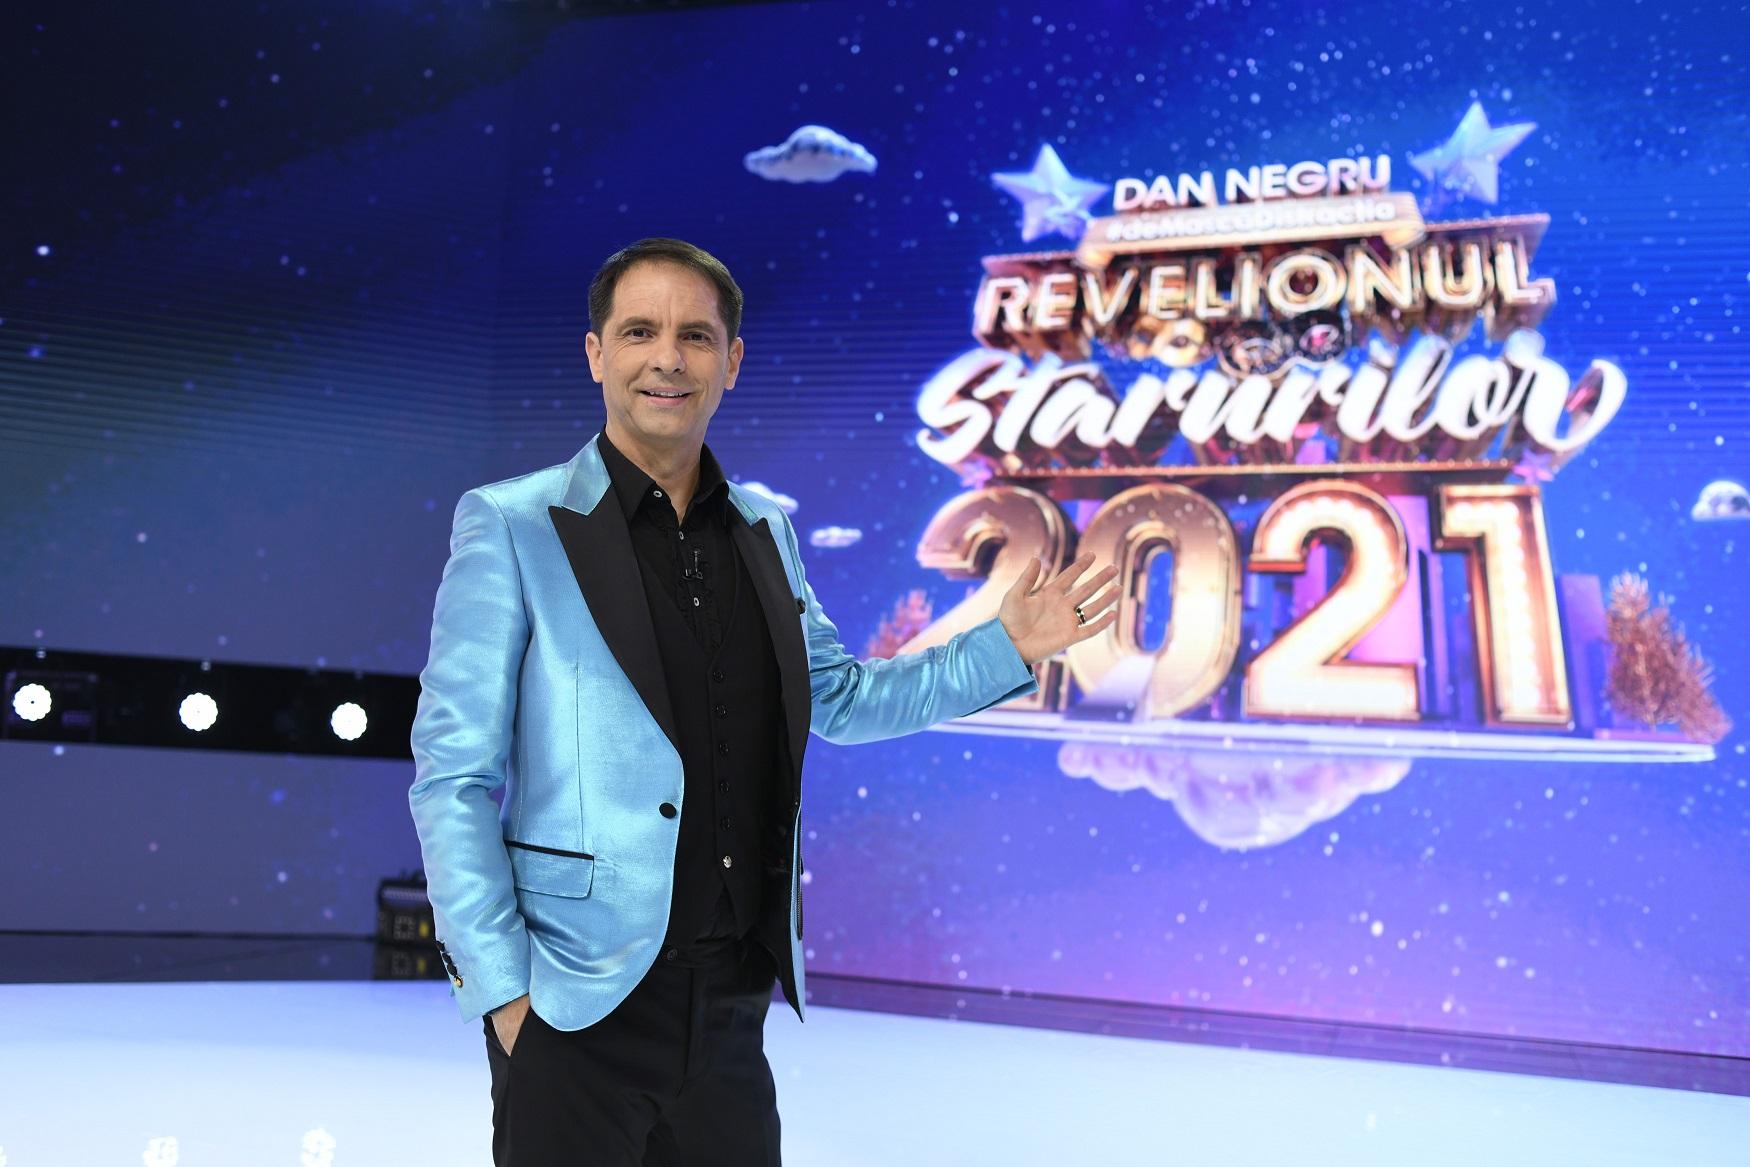 Cel mai lung Revelion cu Dan Negru din istoria televiziunii - Revelionul Starurilor 2021